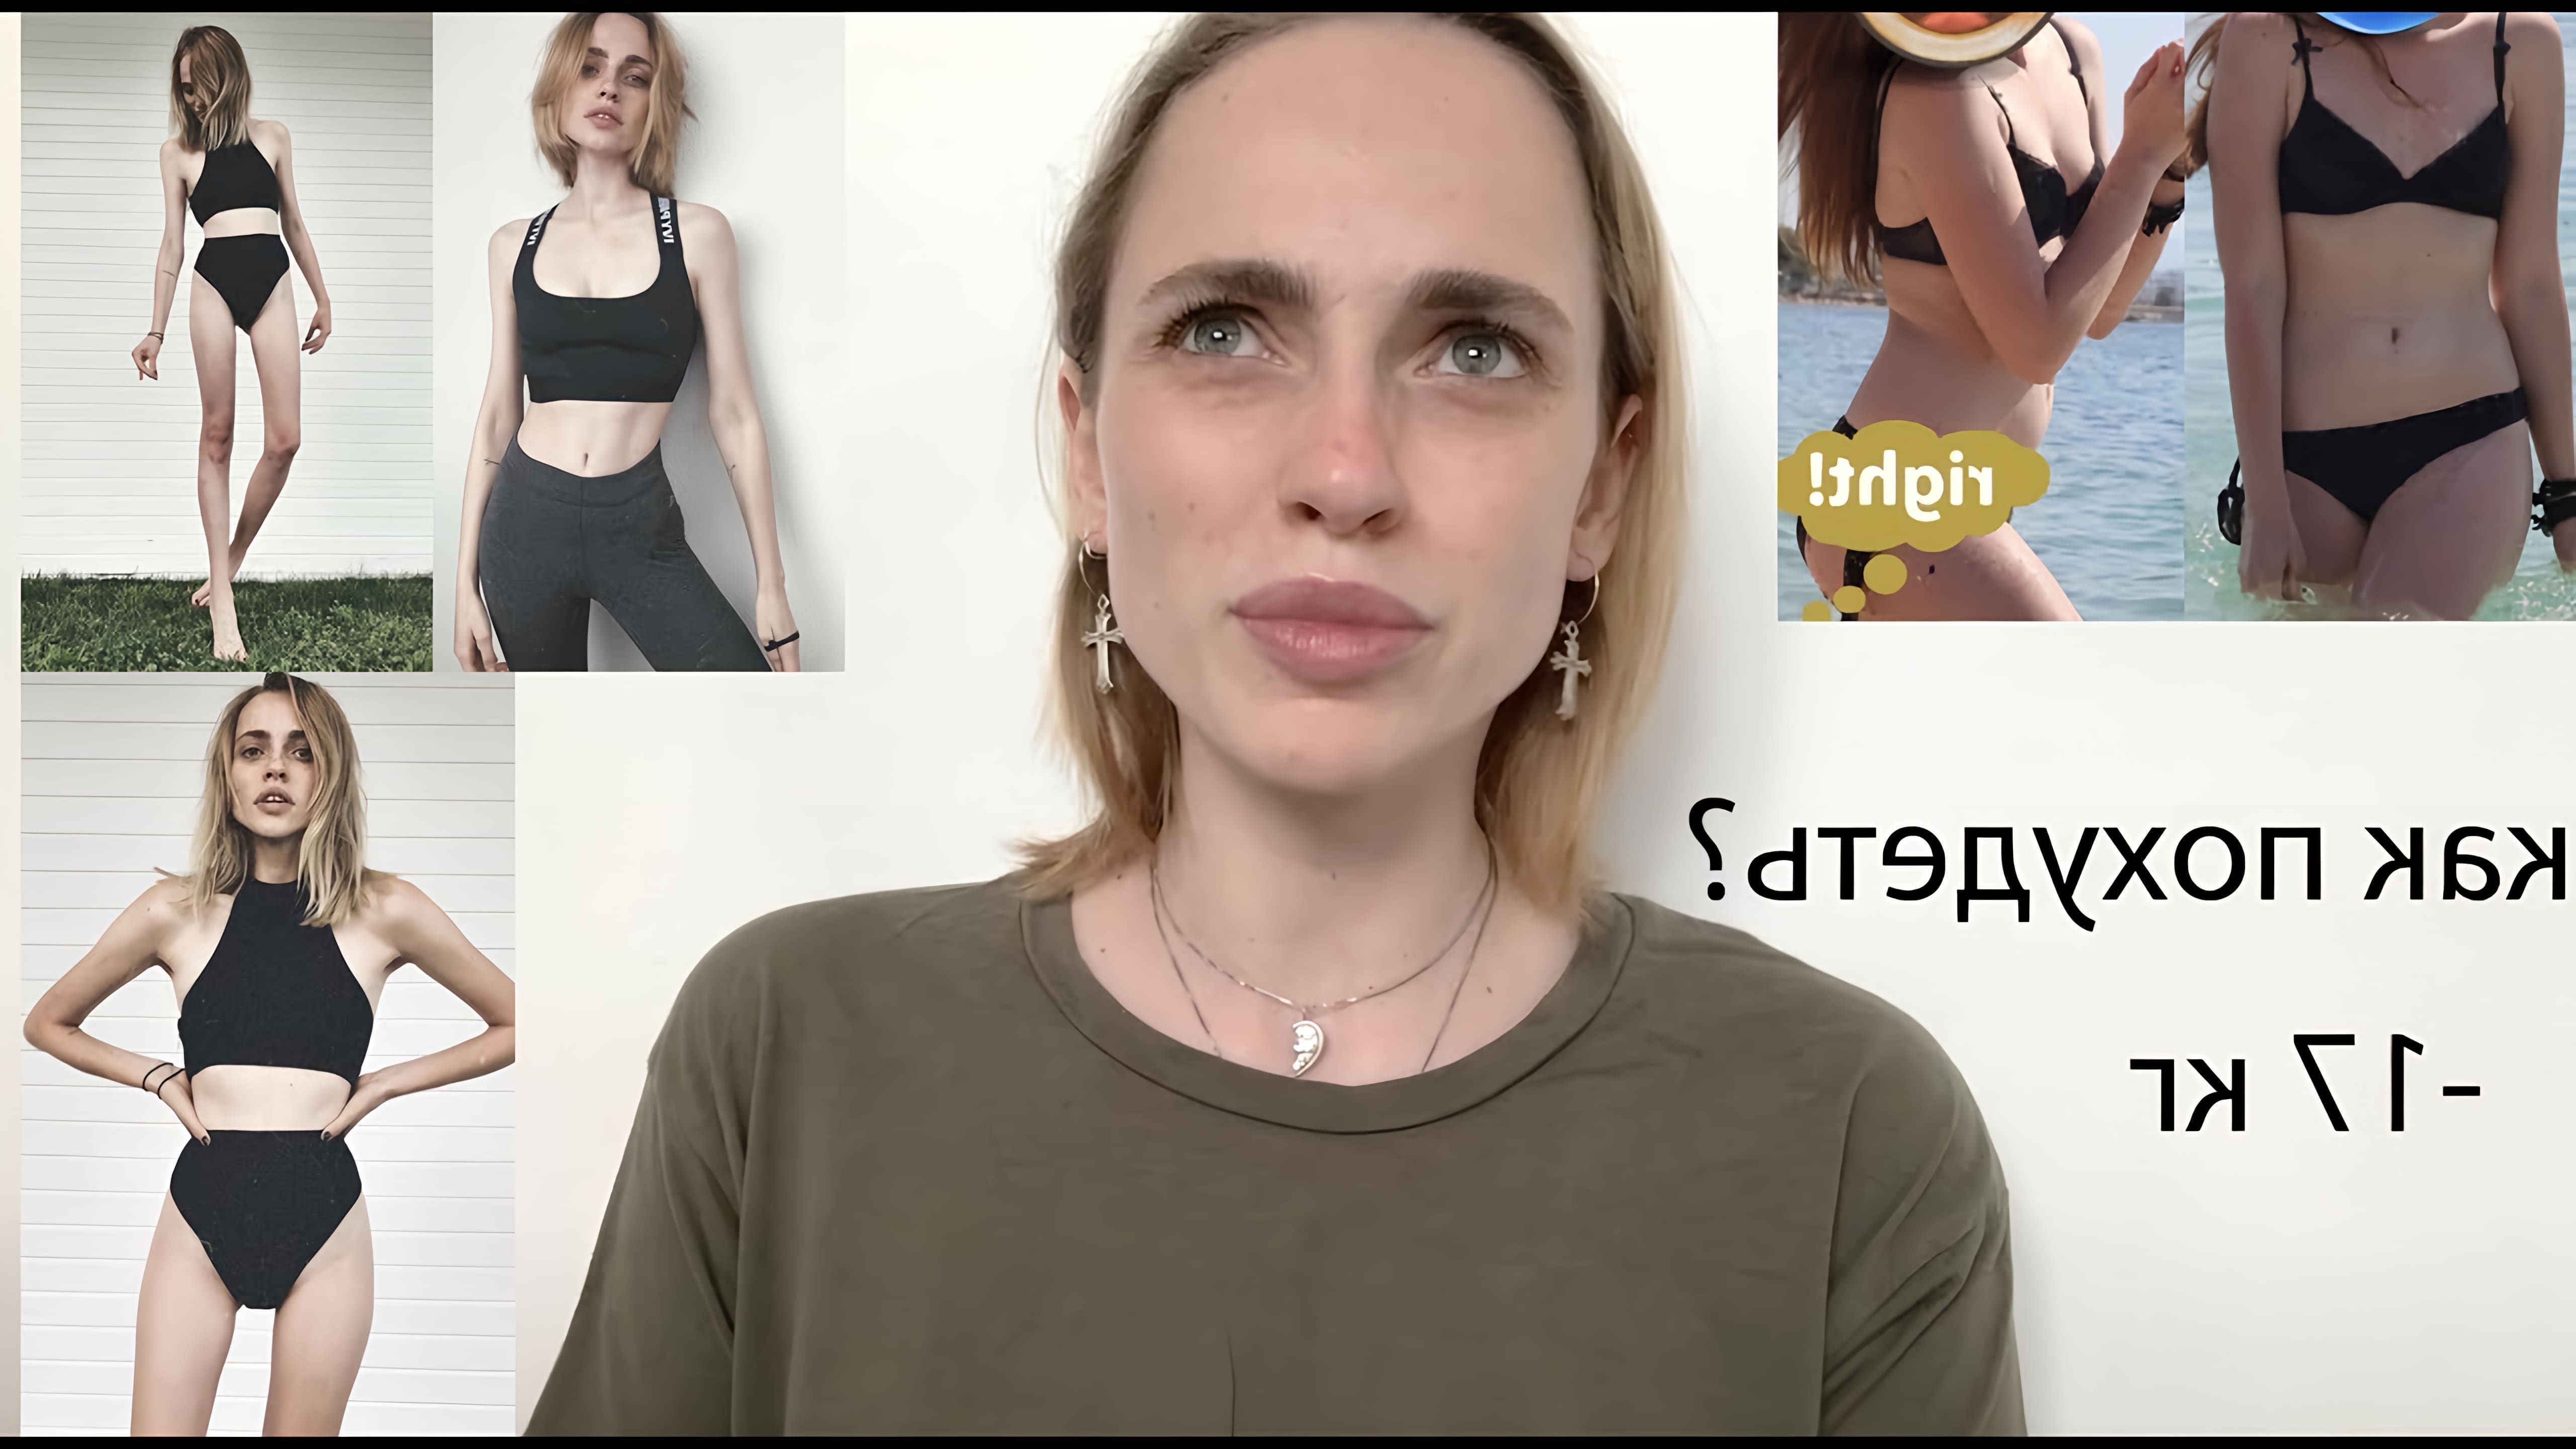 В данном видео девушка рассказывает свою историю похудения, начиная с 2013 года, когда она начала пробовать различные диеты, включая белковую, подслащенную, модельную и другие